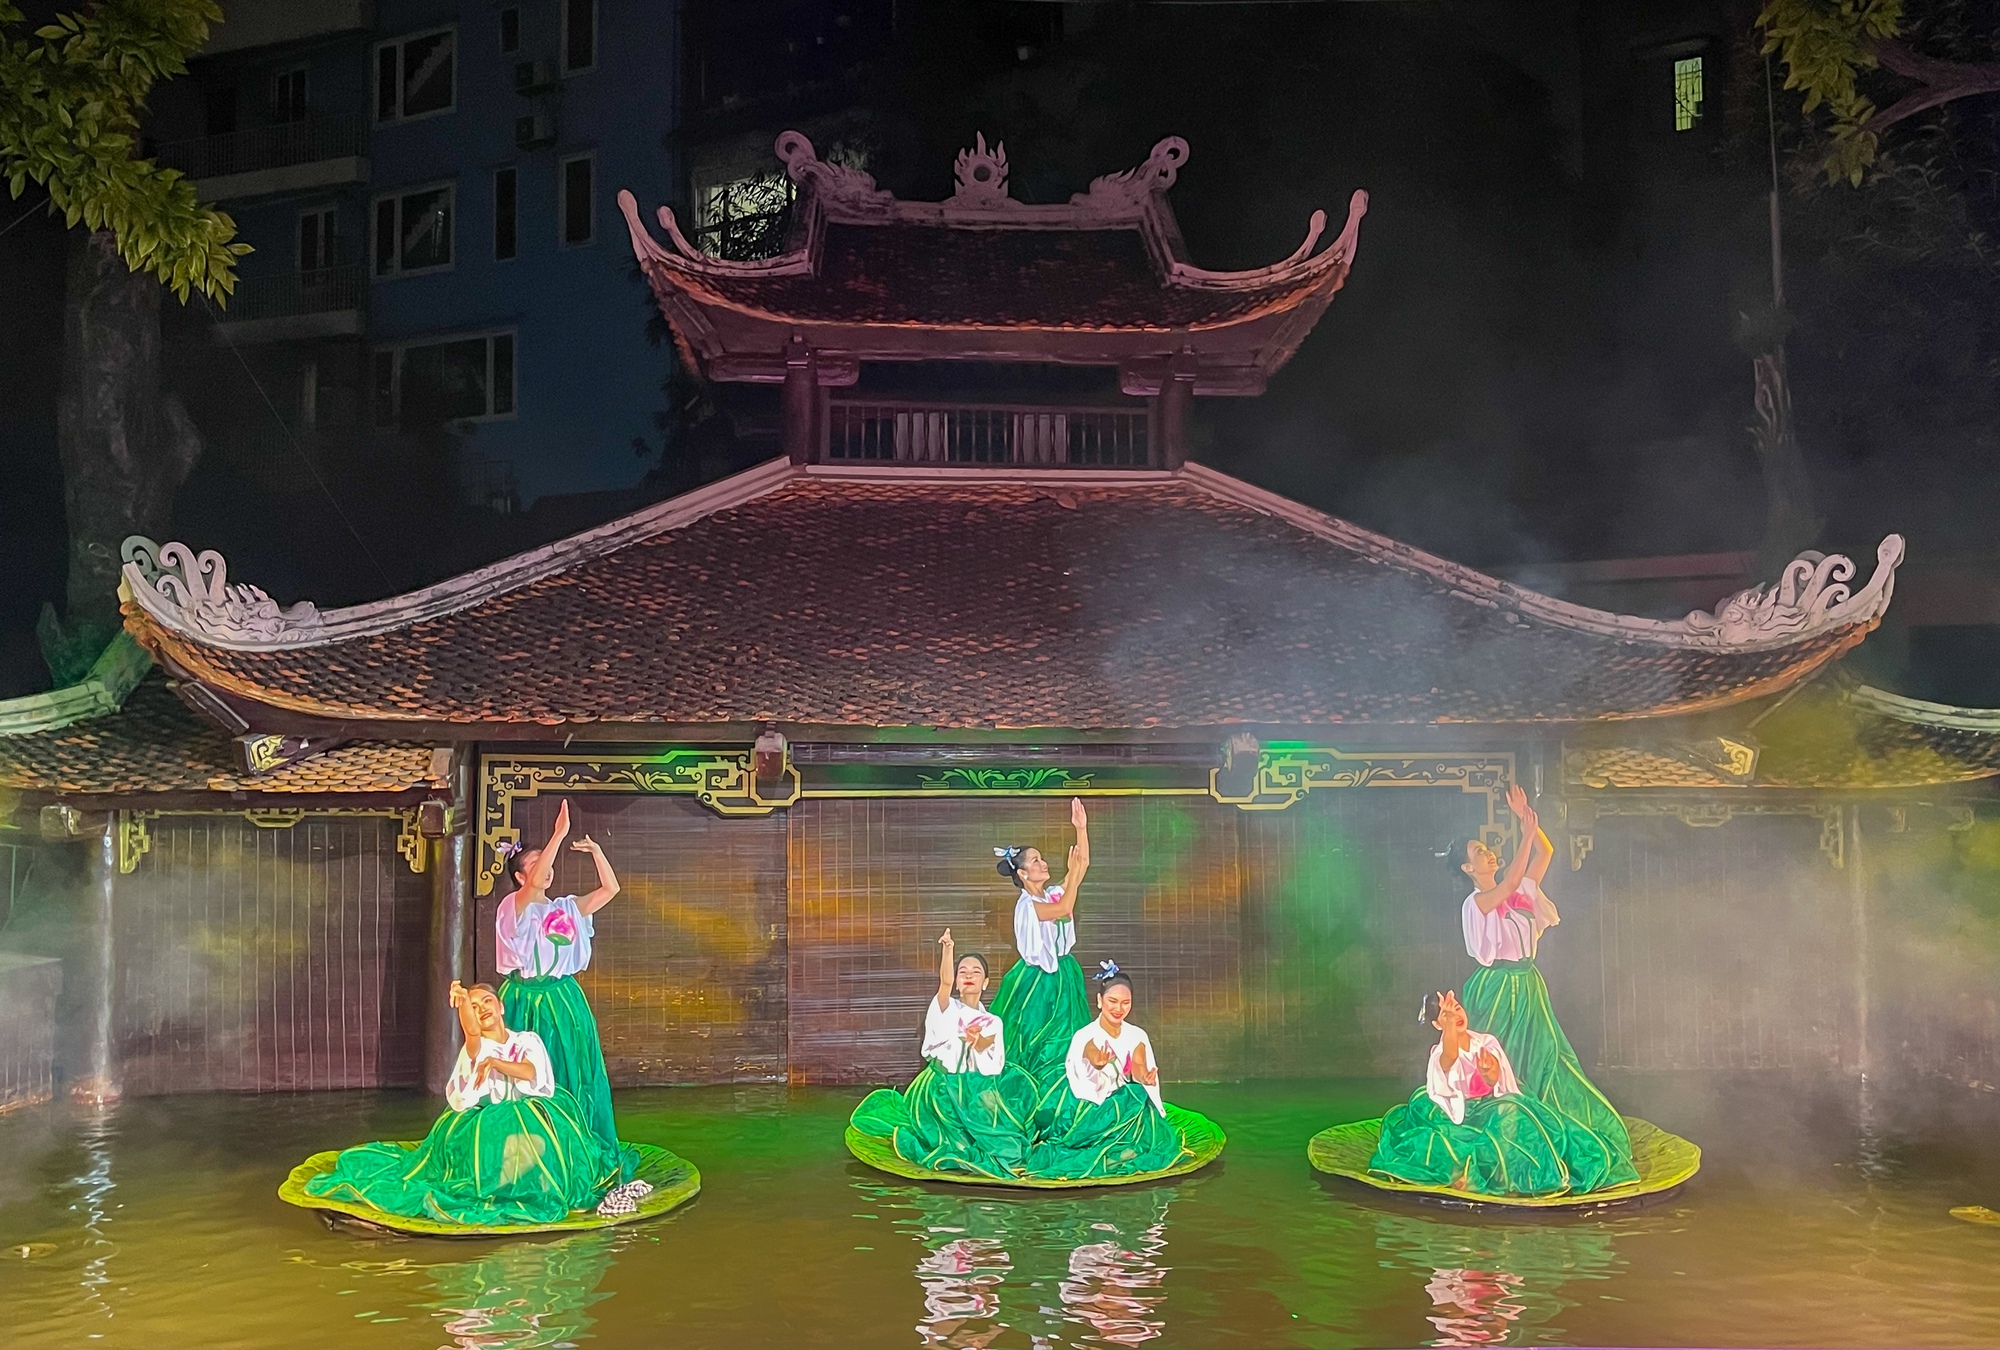 Kể chuyện Hoàng thành Thăng Long qua ngôn ngữ nghệ thuật múa rối nước - Ảnh 1.